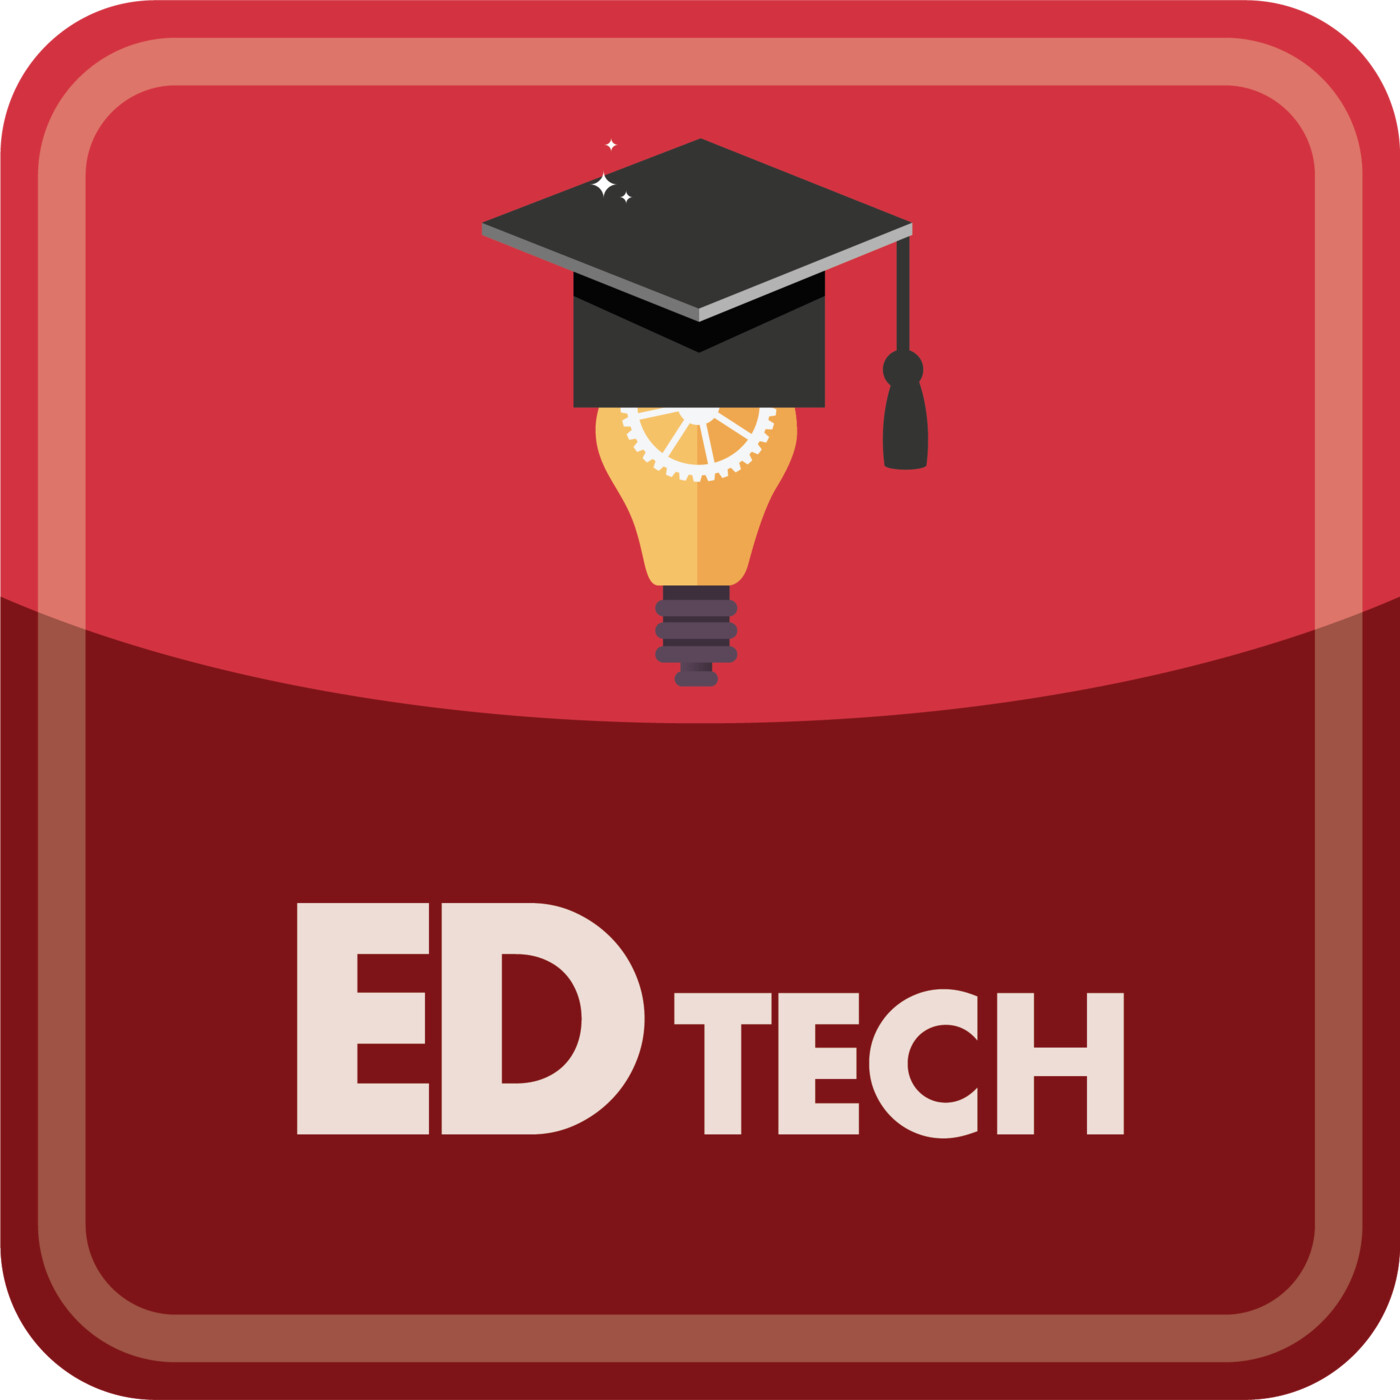 EDTech 97: Ask A Faculty Member